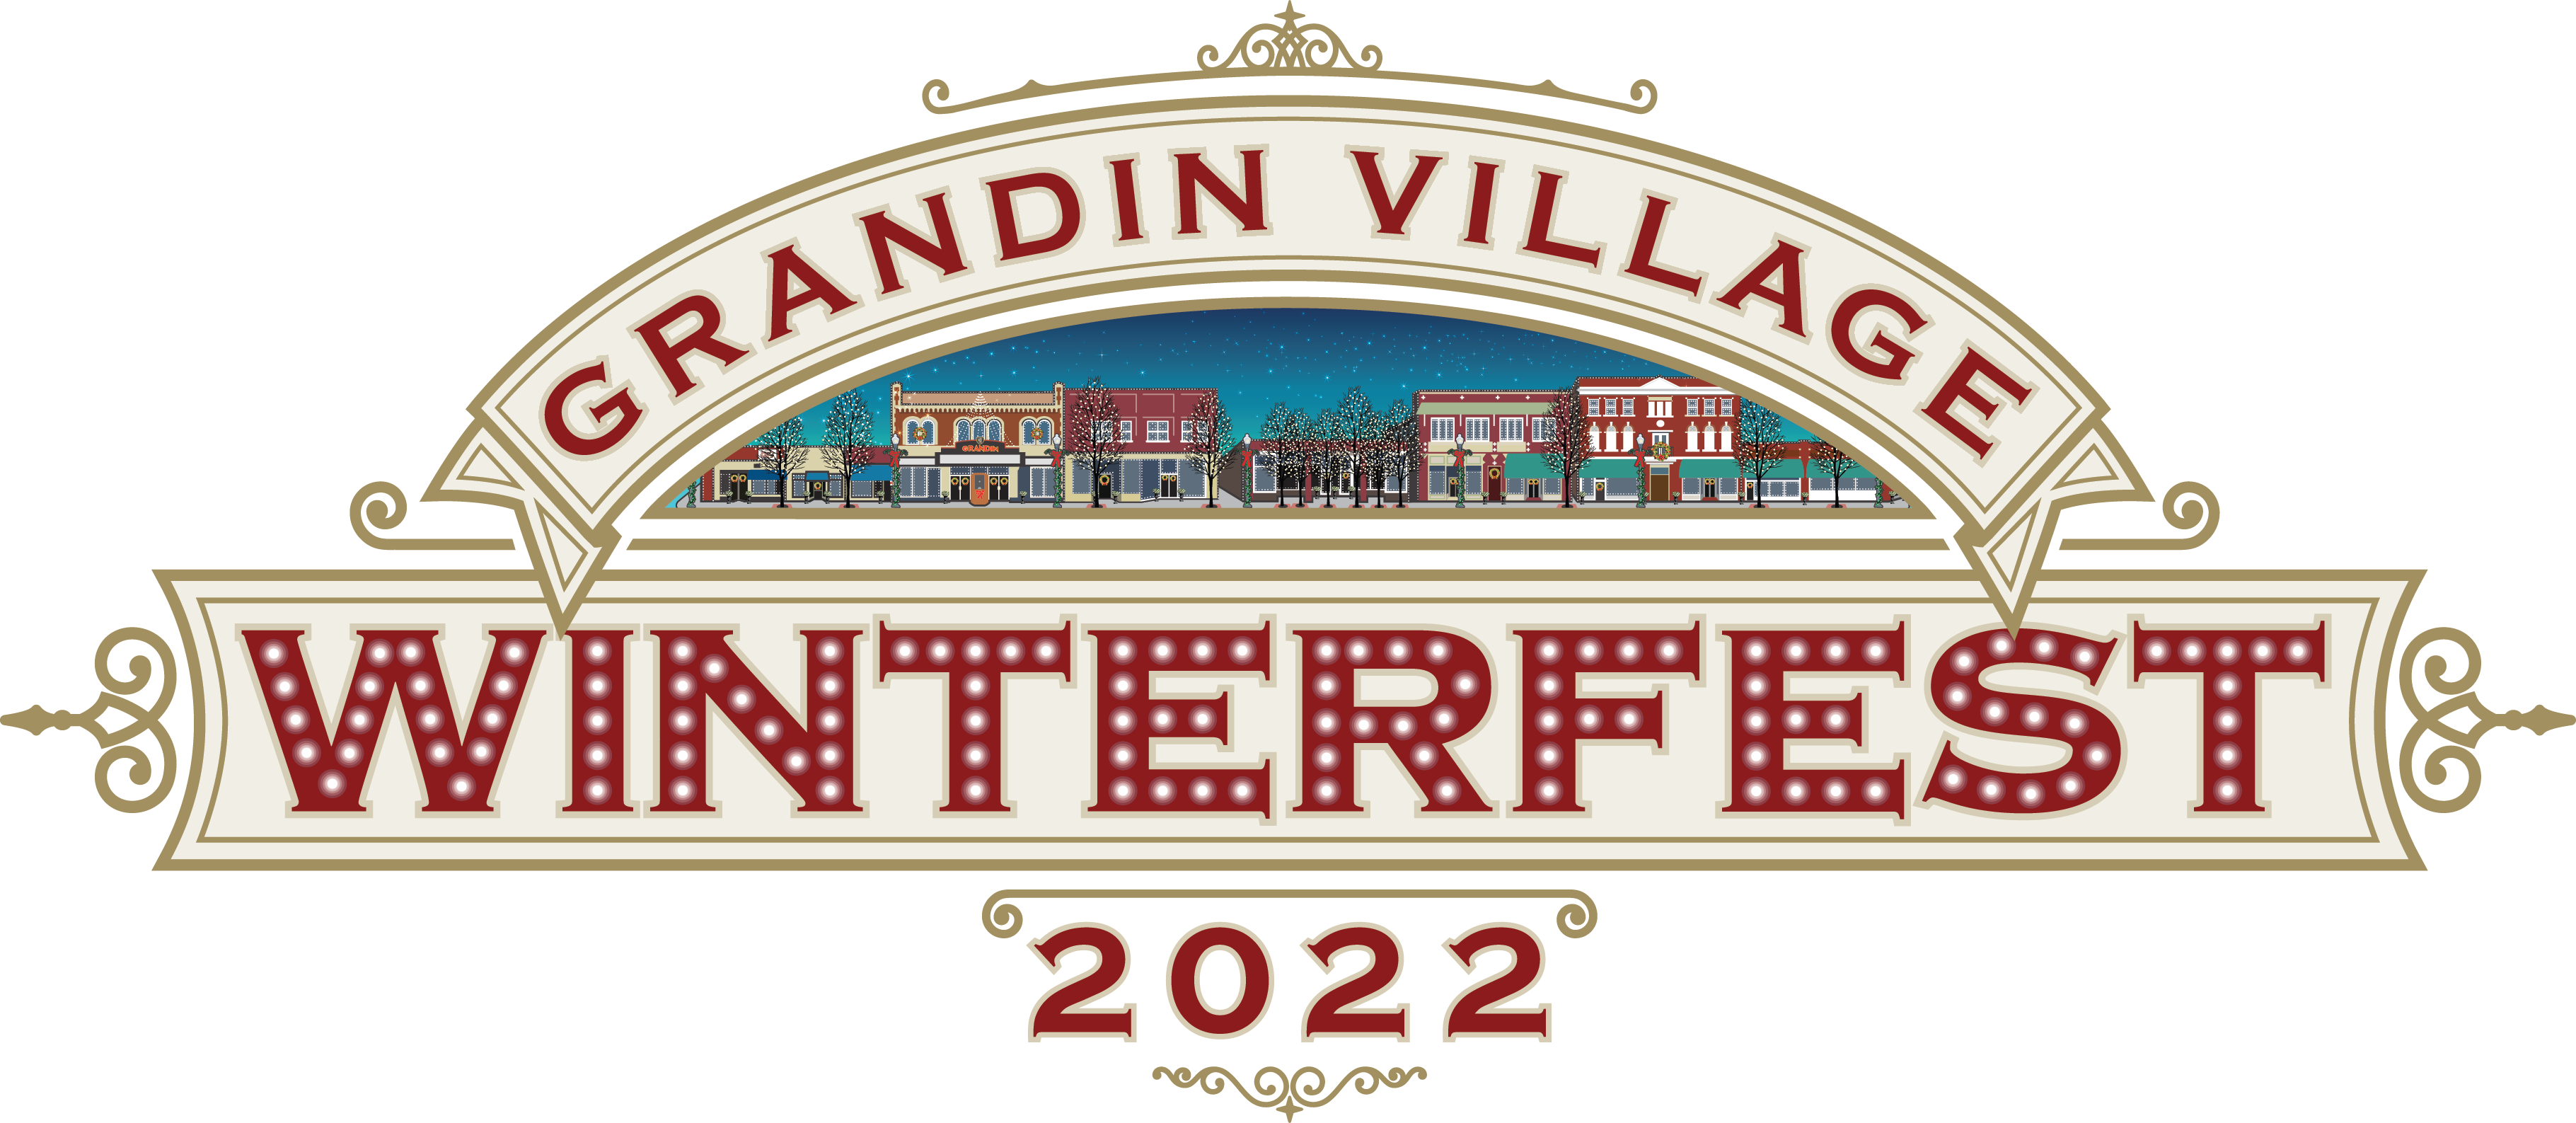 Grandin Village Winterfest logo_2022.png